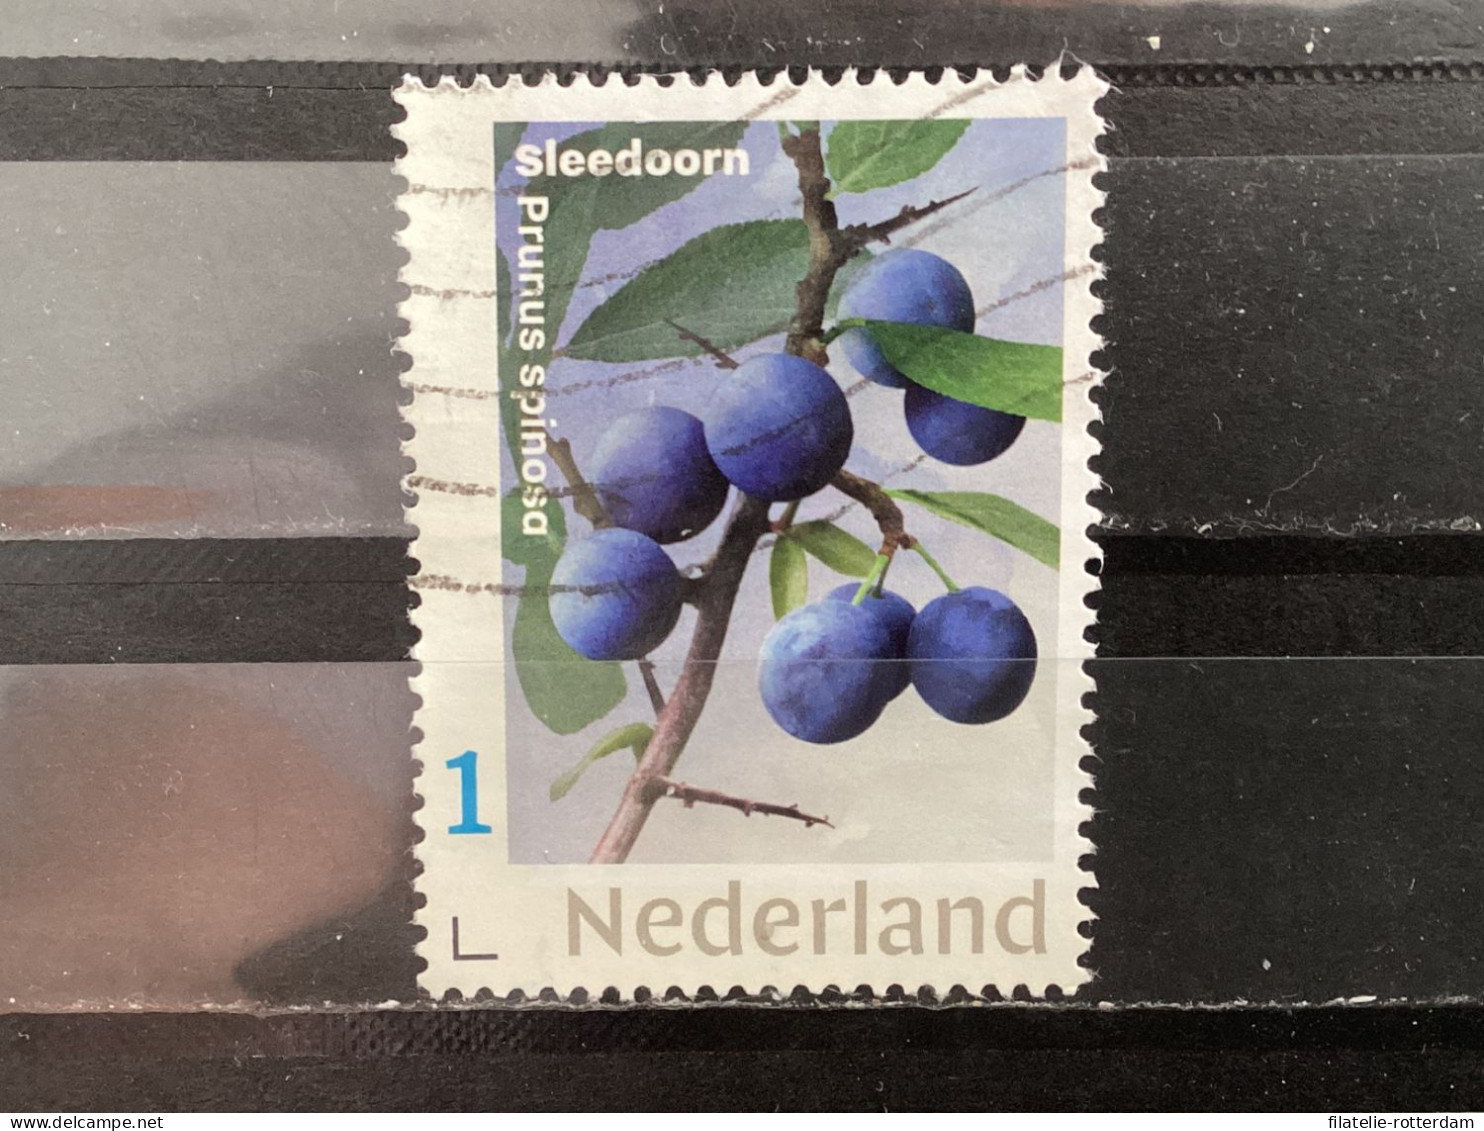 The Netherlands / Nederland - Fruit, Sleedoorn 2021 - Gebruikt